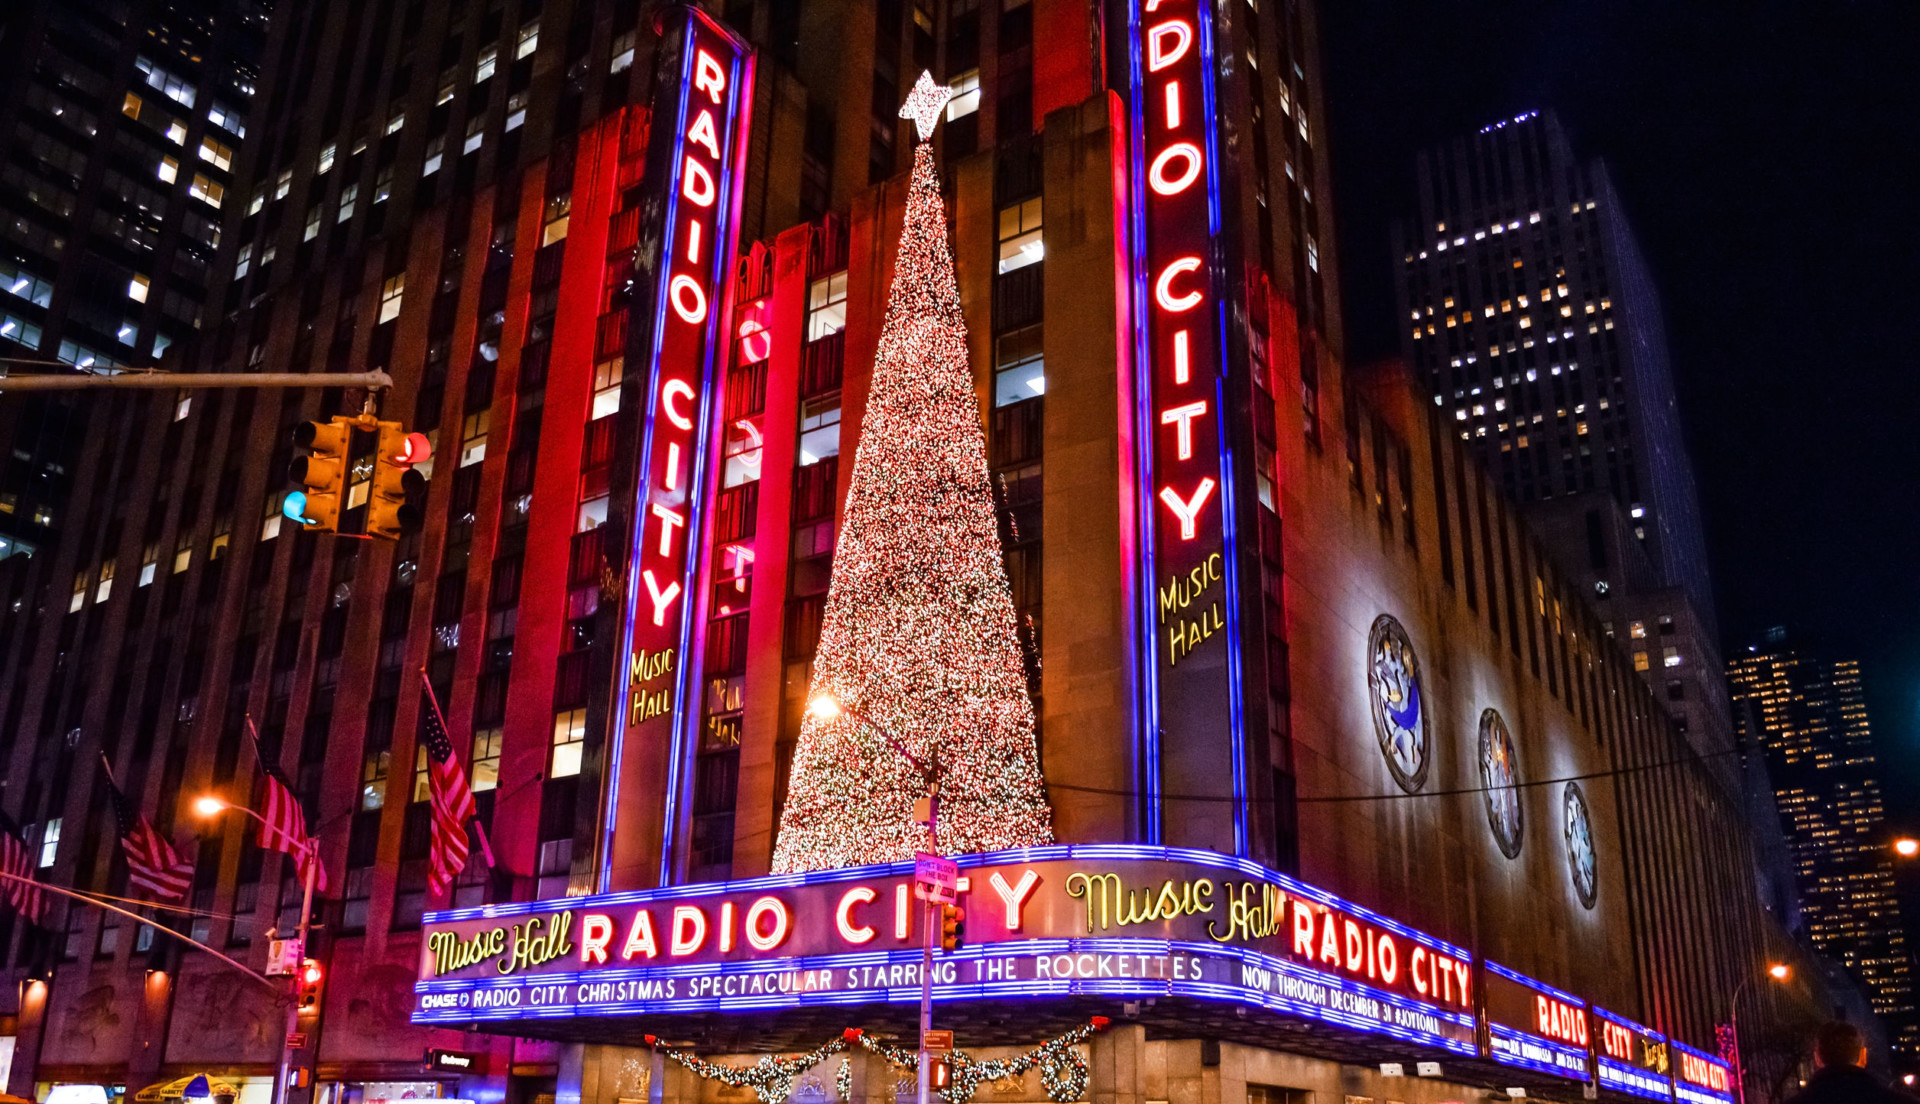 Christmas at Radio City Music Hall